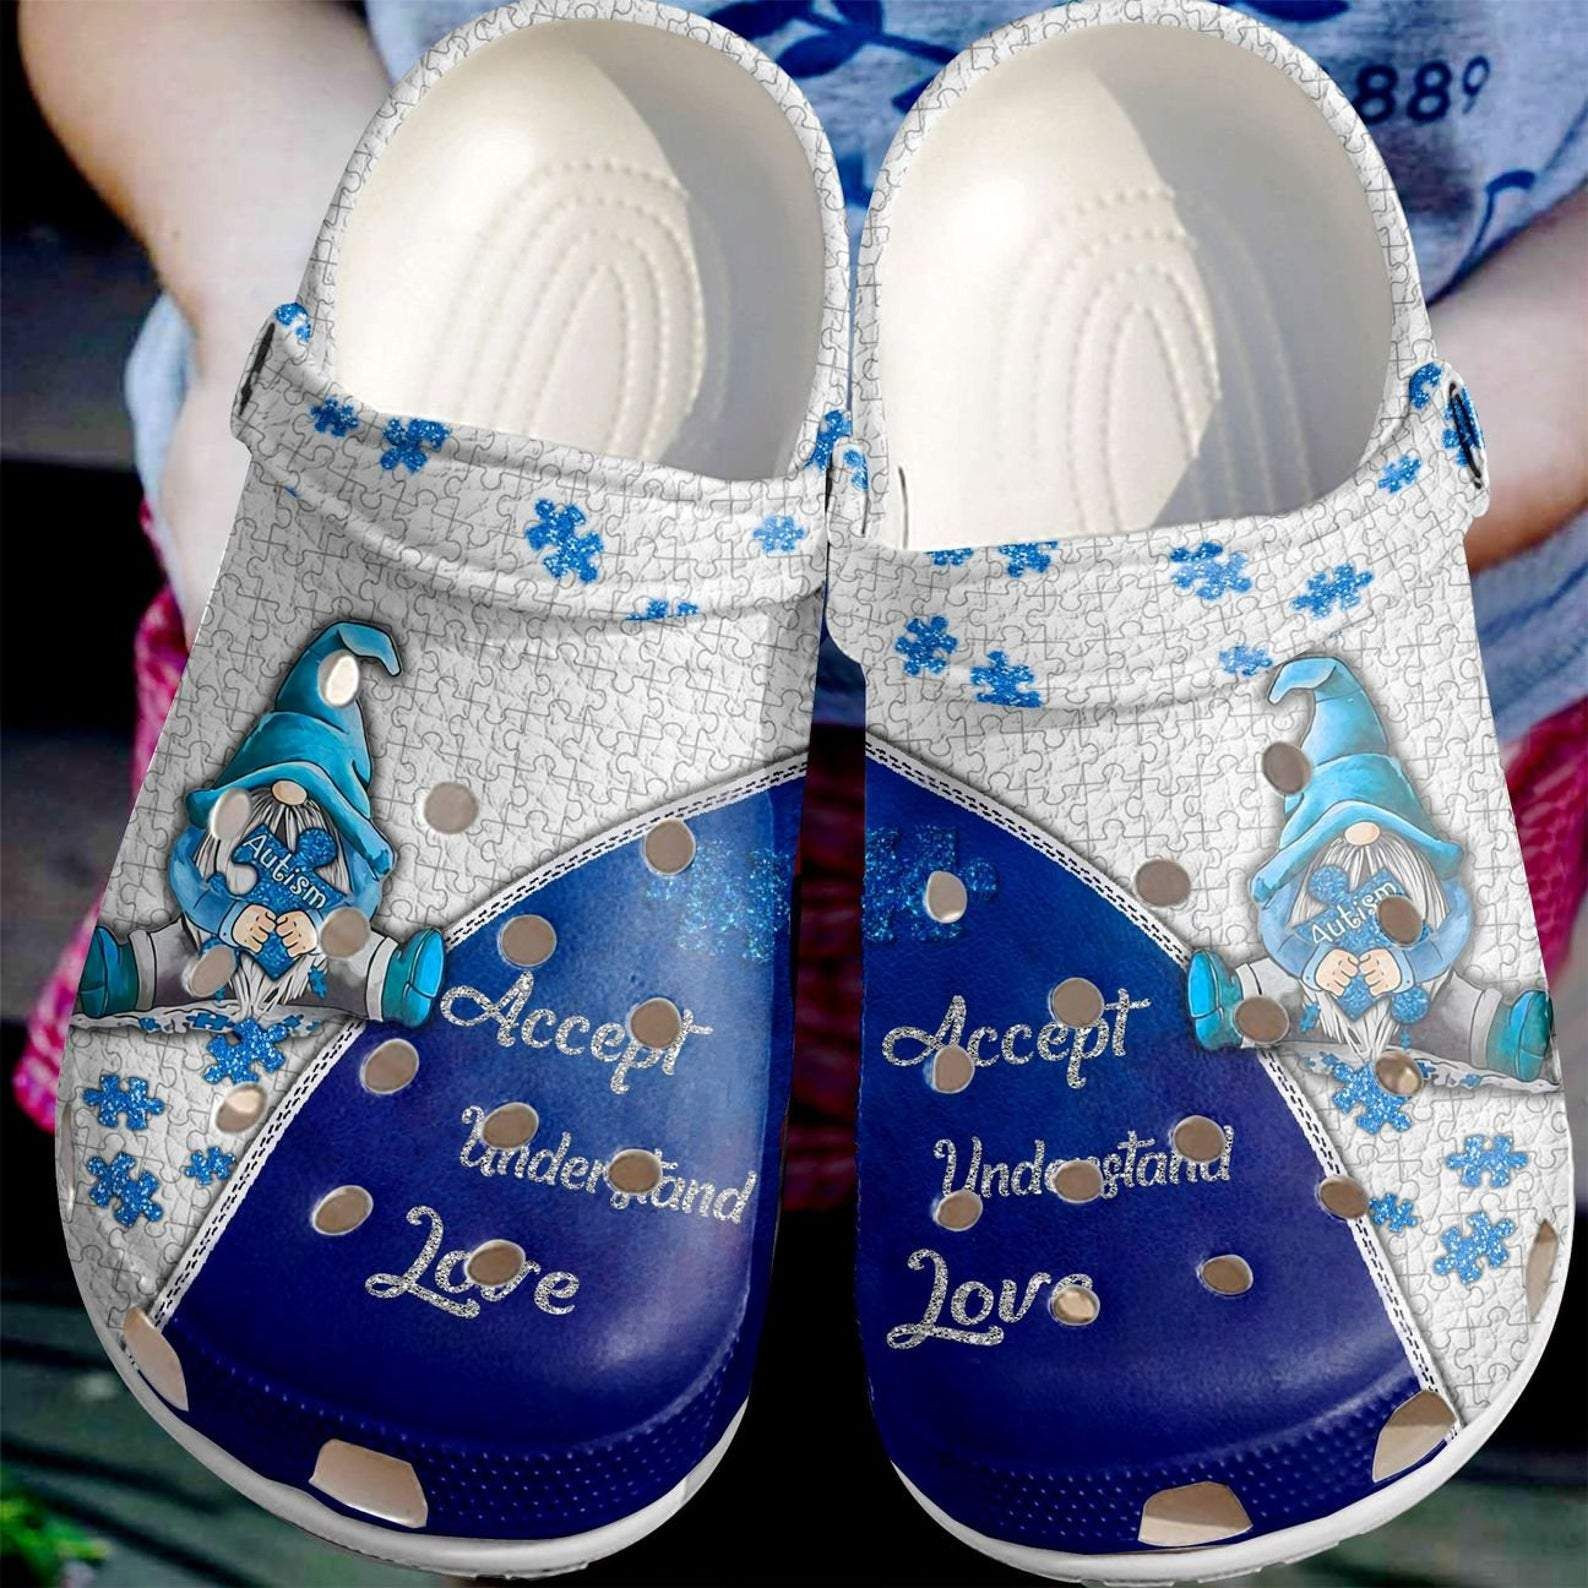 Autism Awareness Crocs Blue Dwarfs Puzzle Acccept Understand Love Crocband Clog Shoes For Men Women